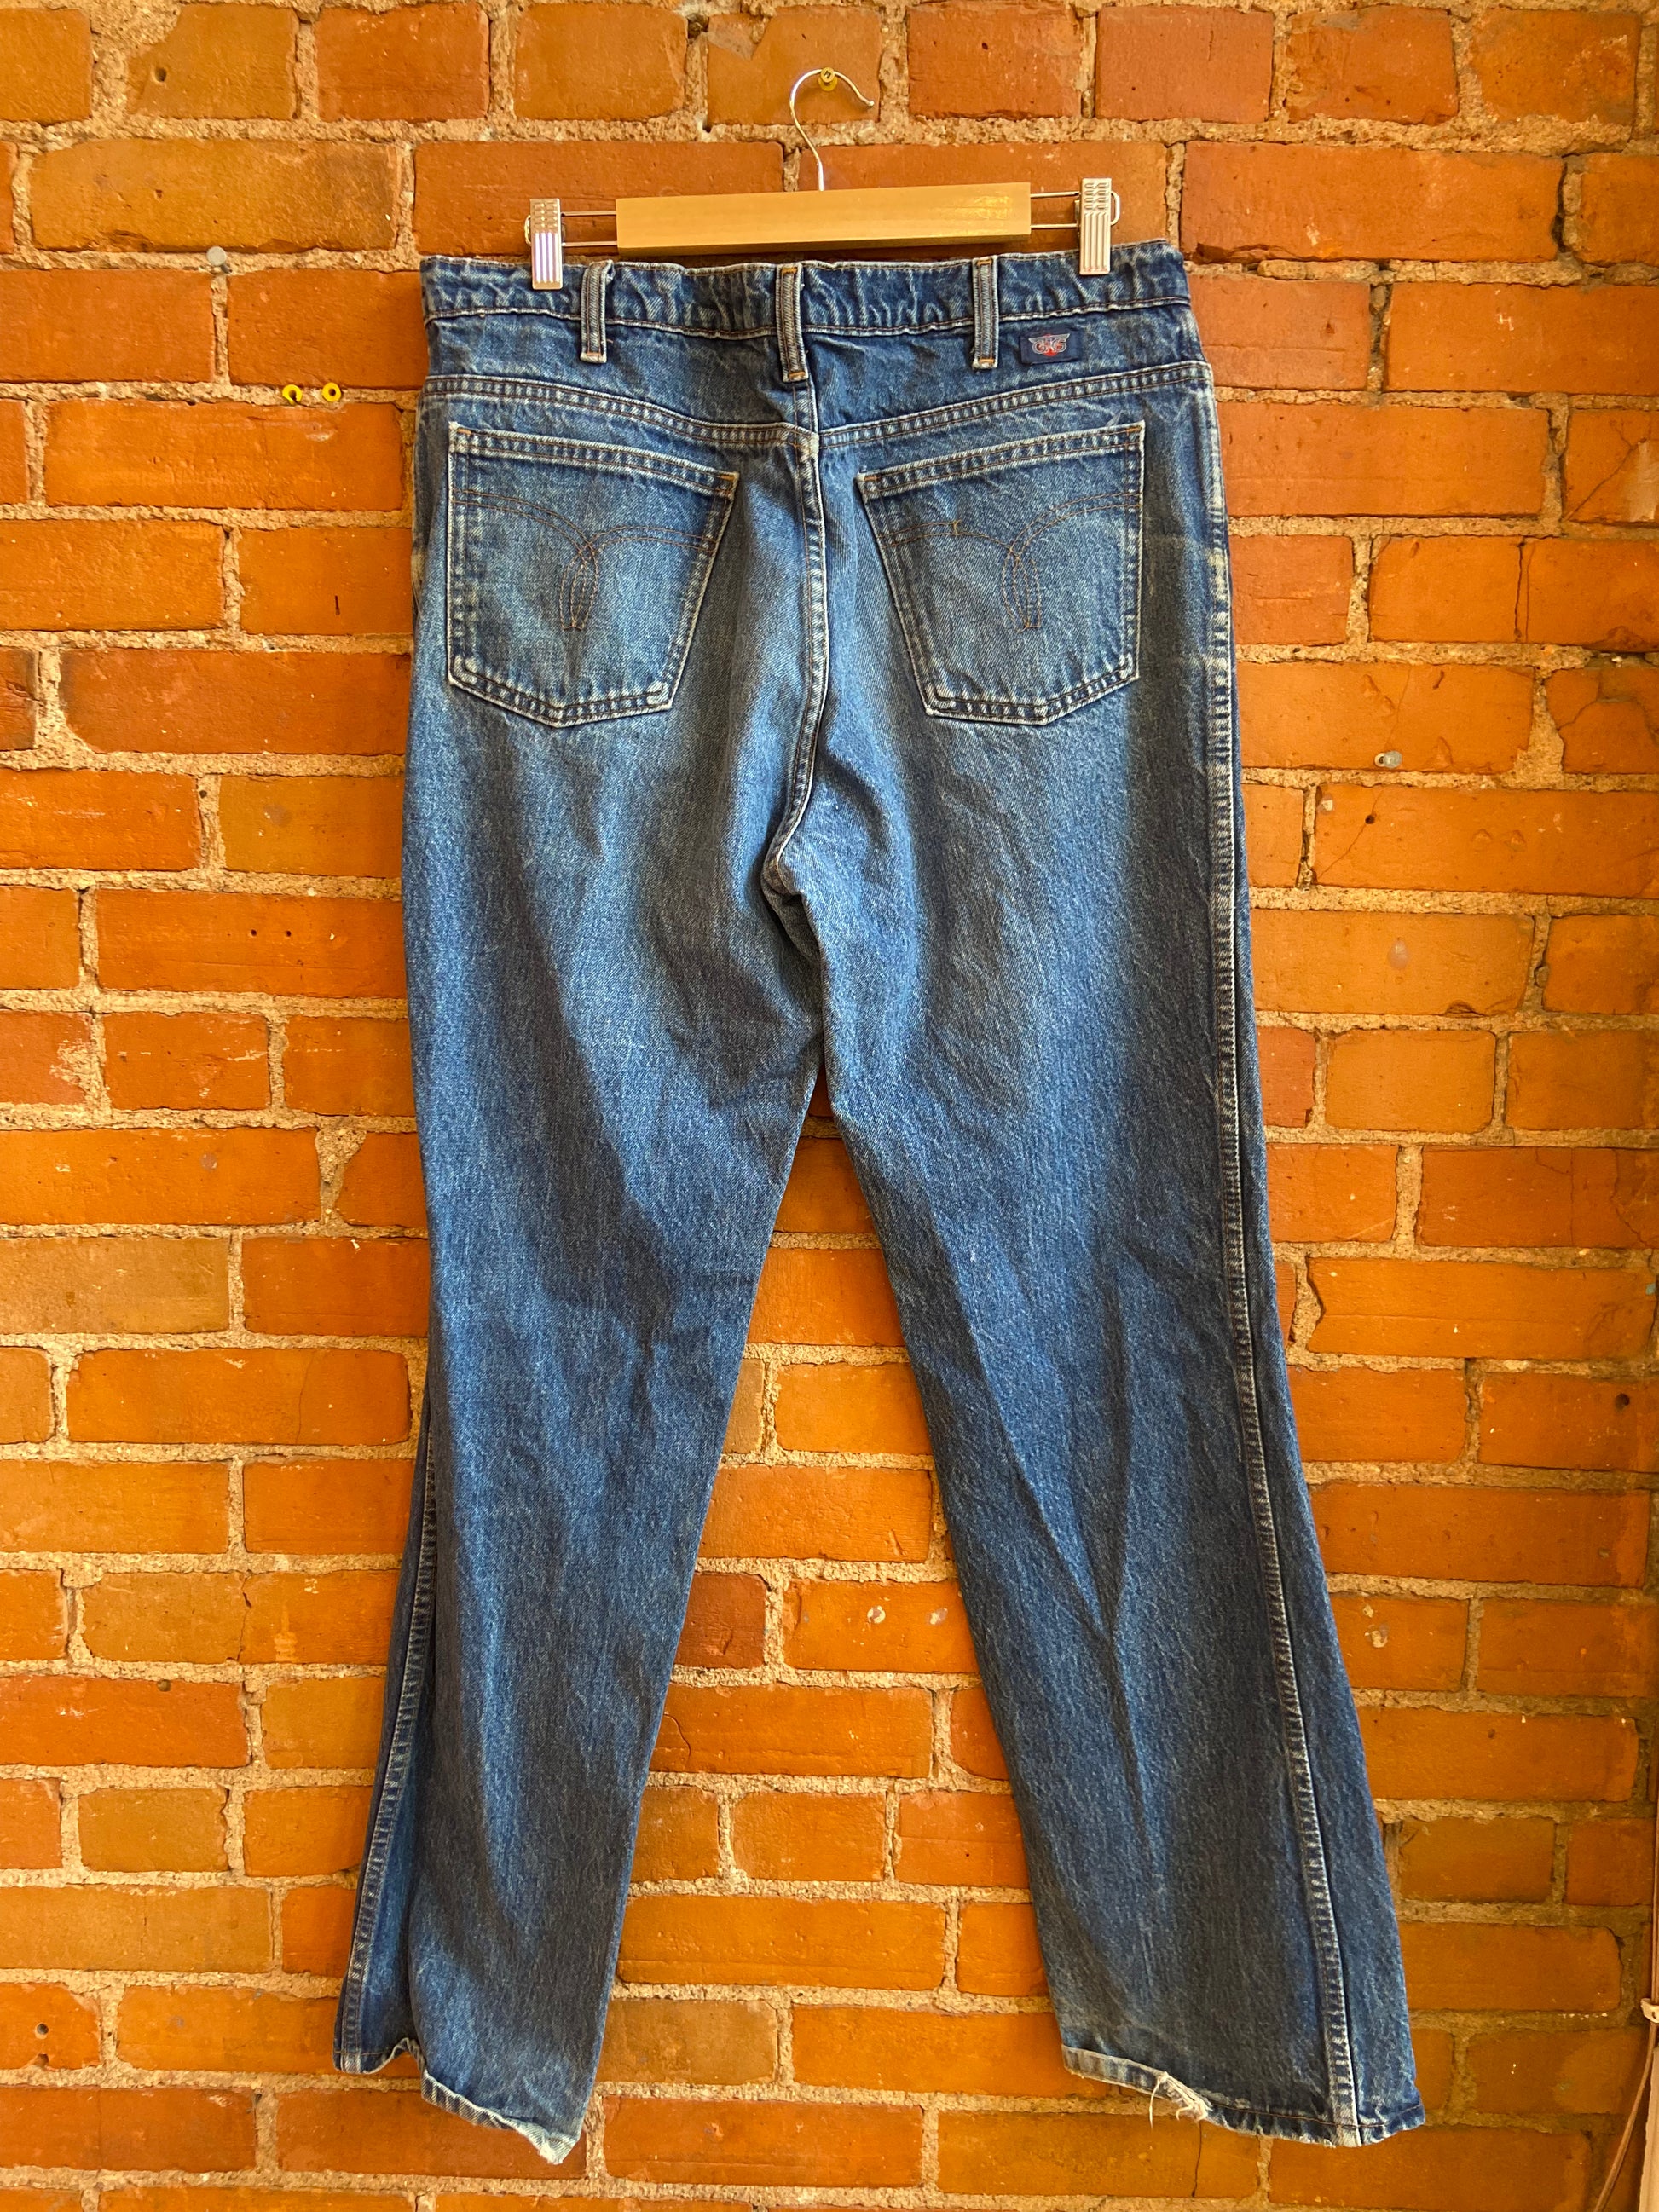 Vintage GWG Jeans / Light Wash Denim Flare High waisted Pants / 30